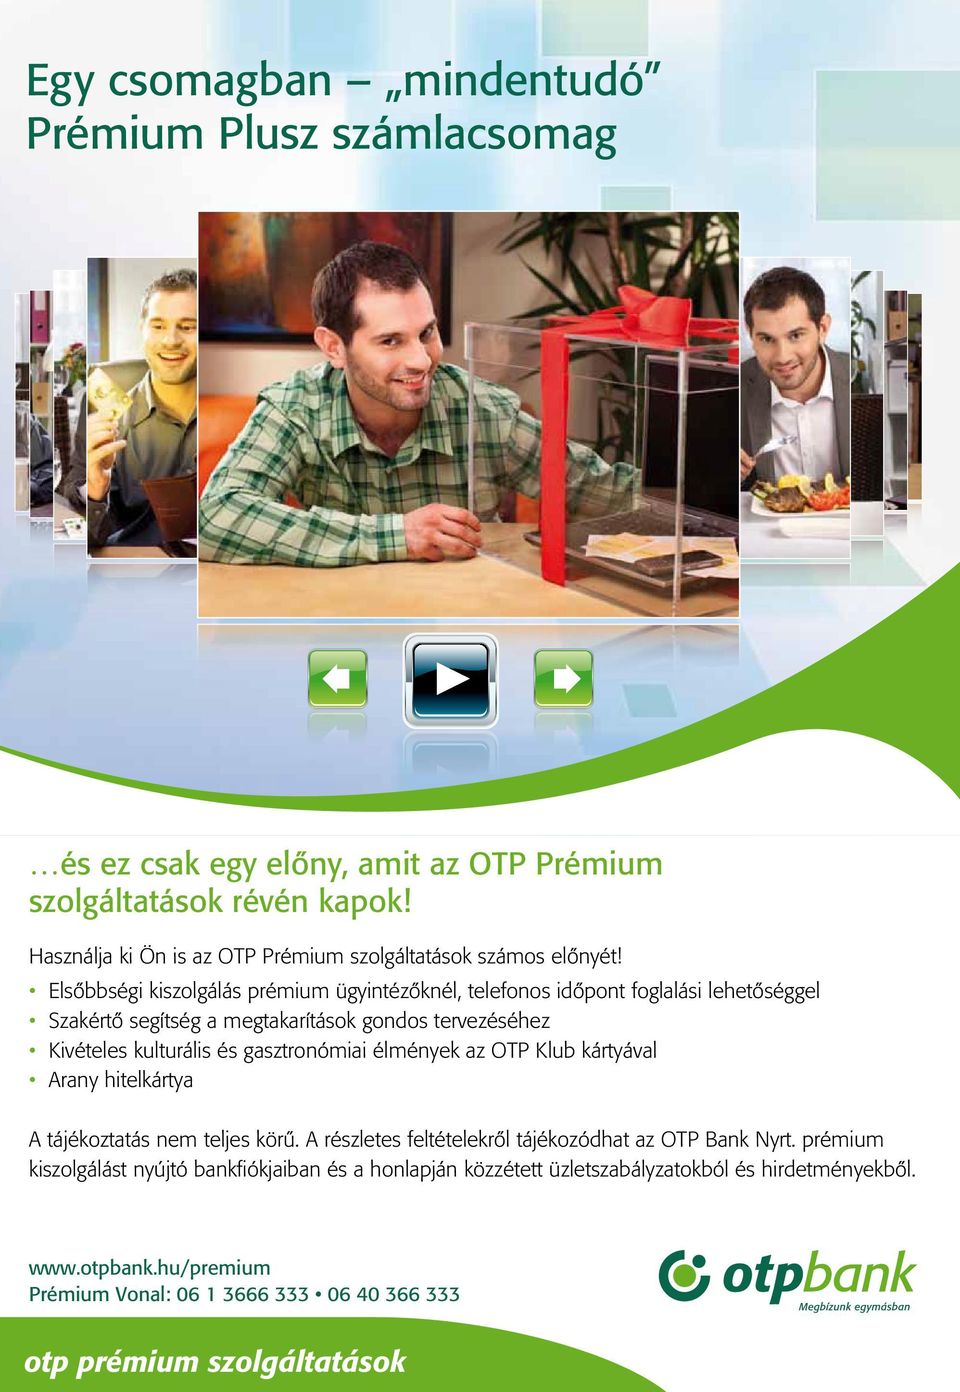 Használja ki Ön is az OTP Prémium szolgáltatások számos előnyét!